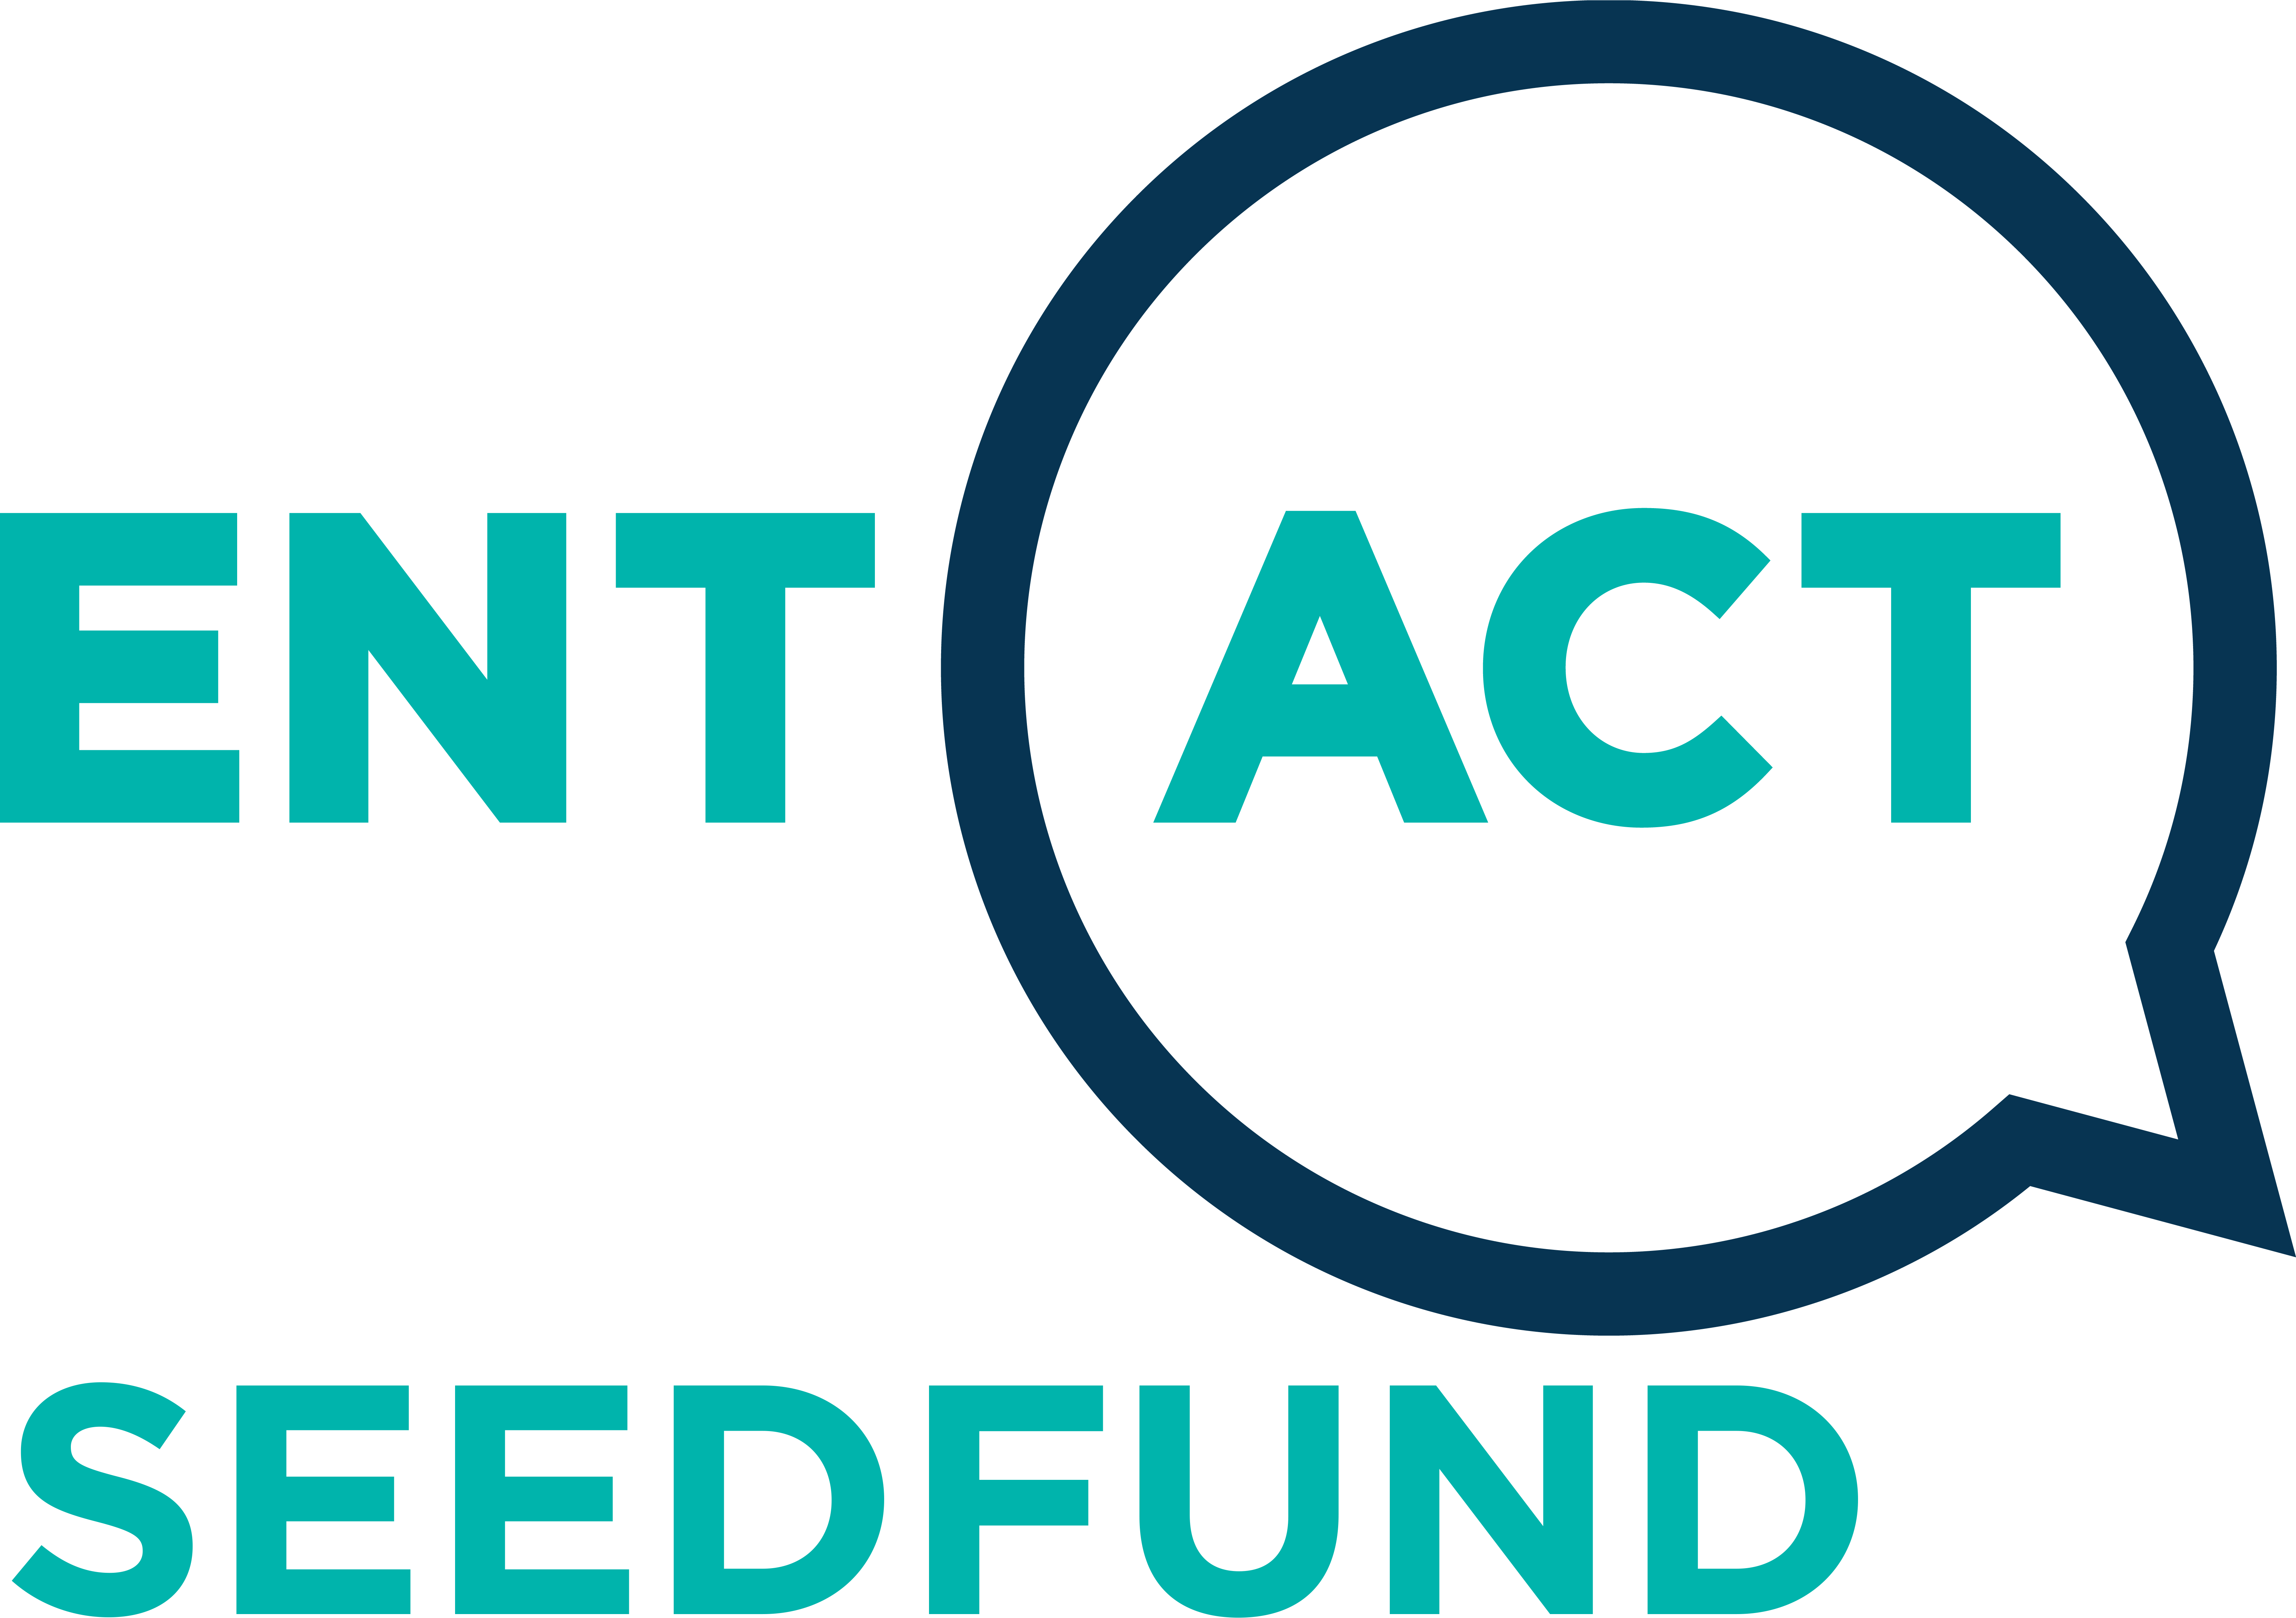 EntAct - SeedFund